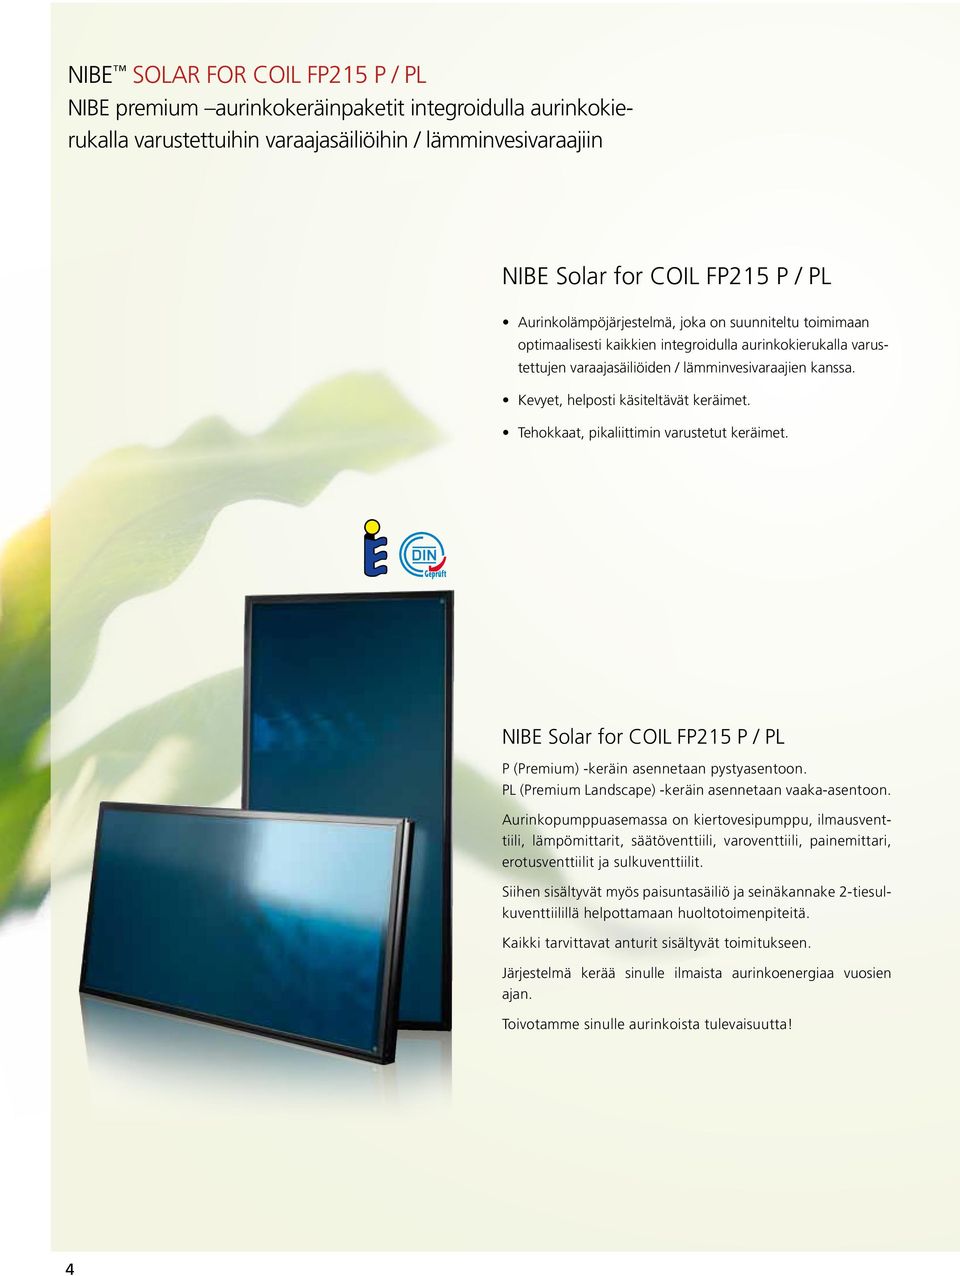 Kevyet, helposti käsiteltävät keräimet. ehokkaat, pikaliittimin varustetut keräimet. NIBE Solar for COIL FP215 P / PL P (Premium) -keräin asennetaan pystyasentoon.